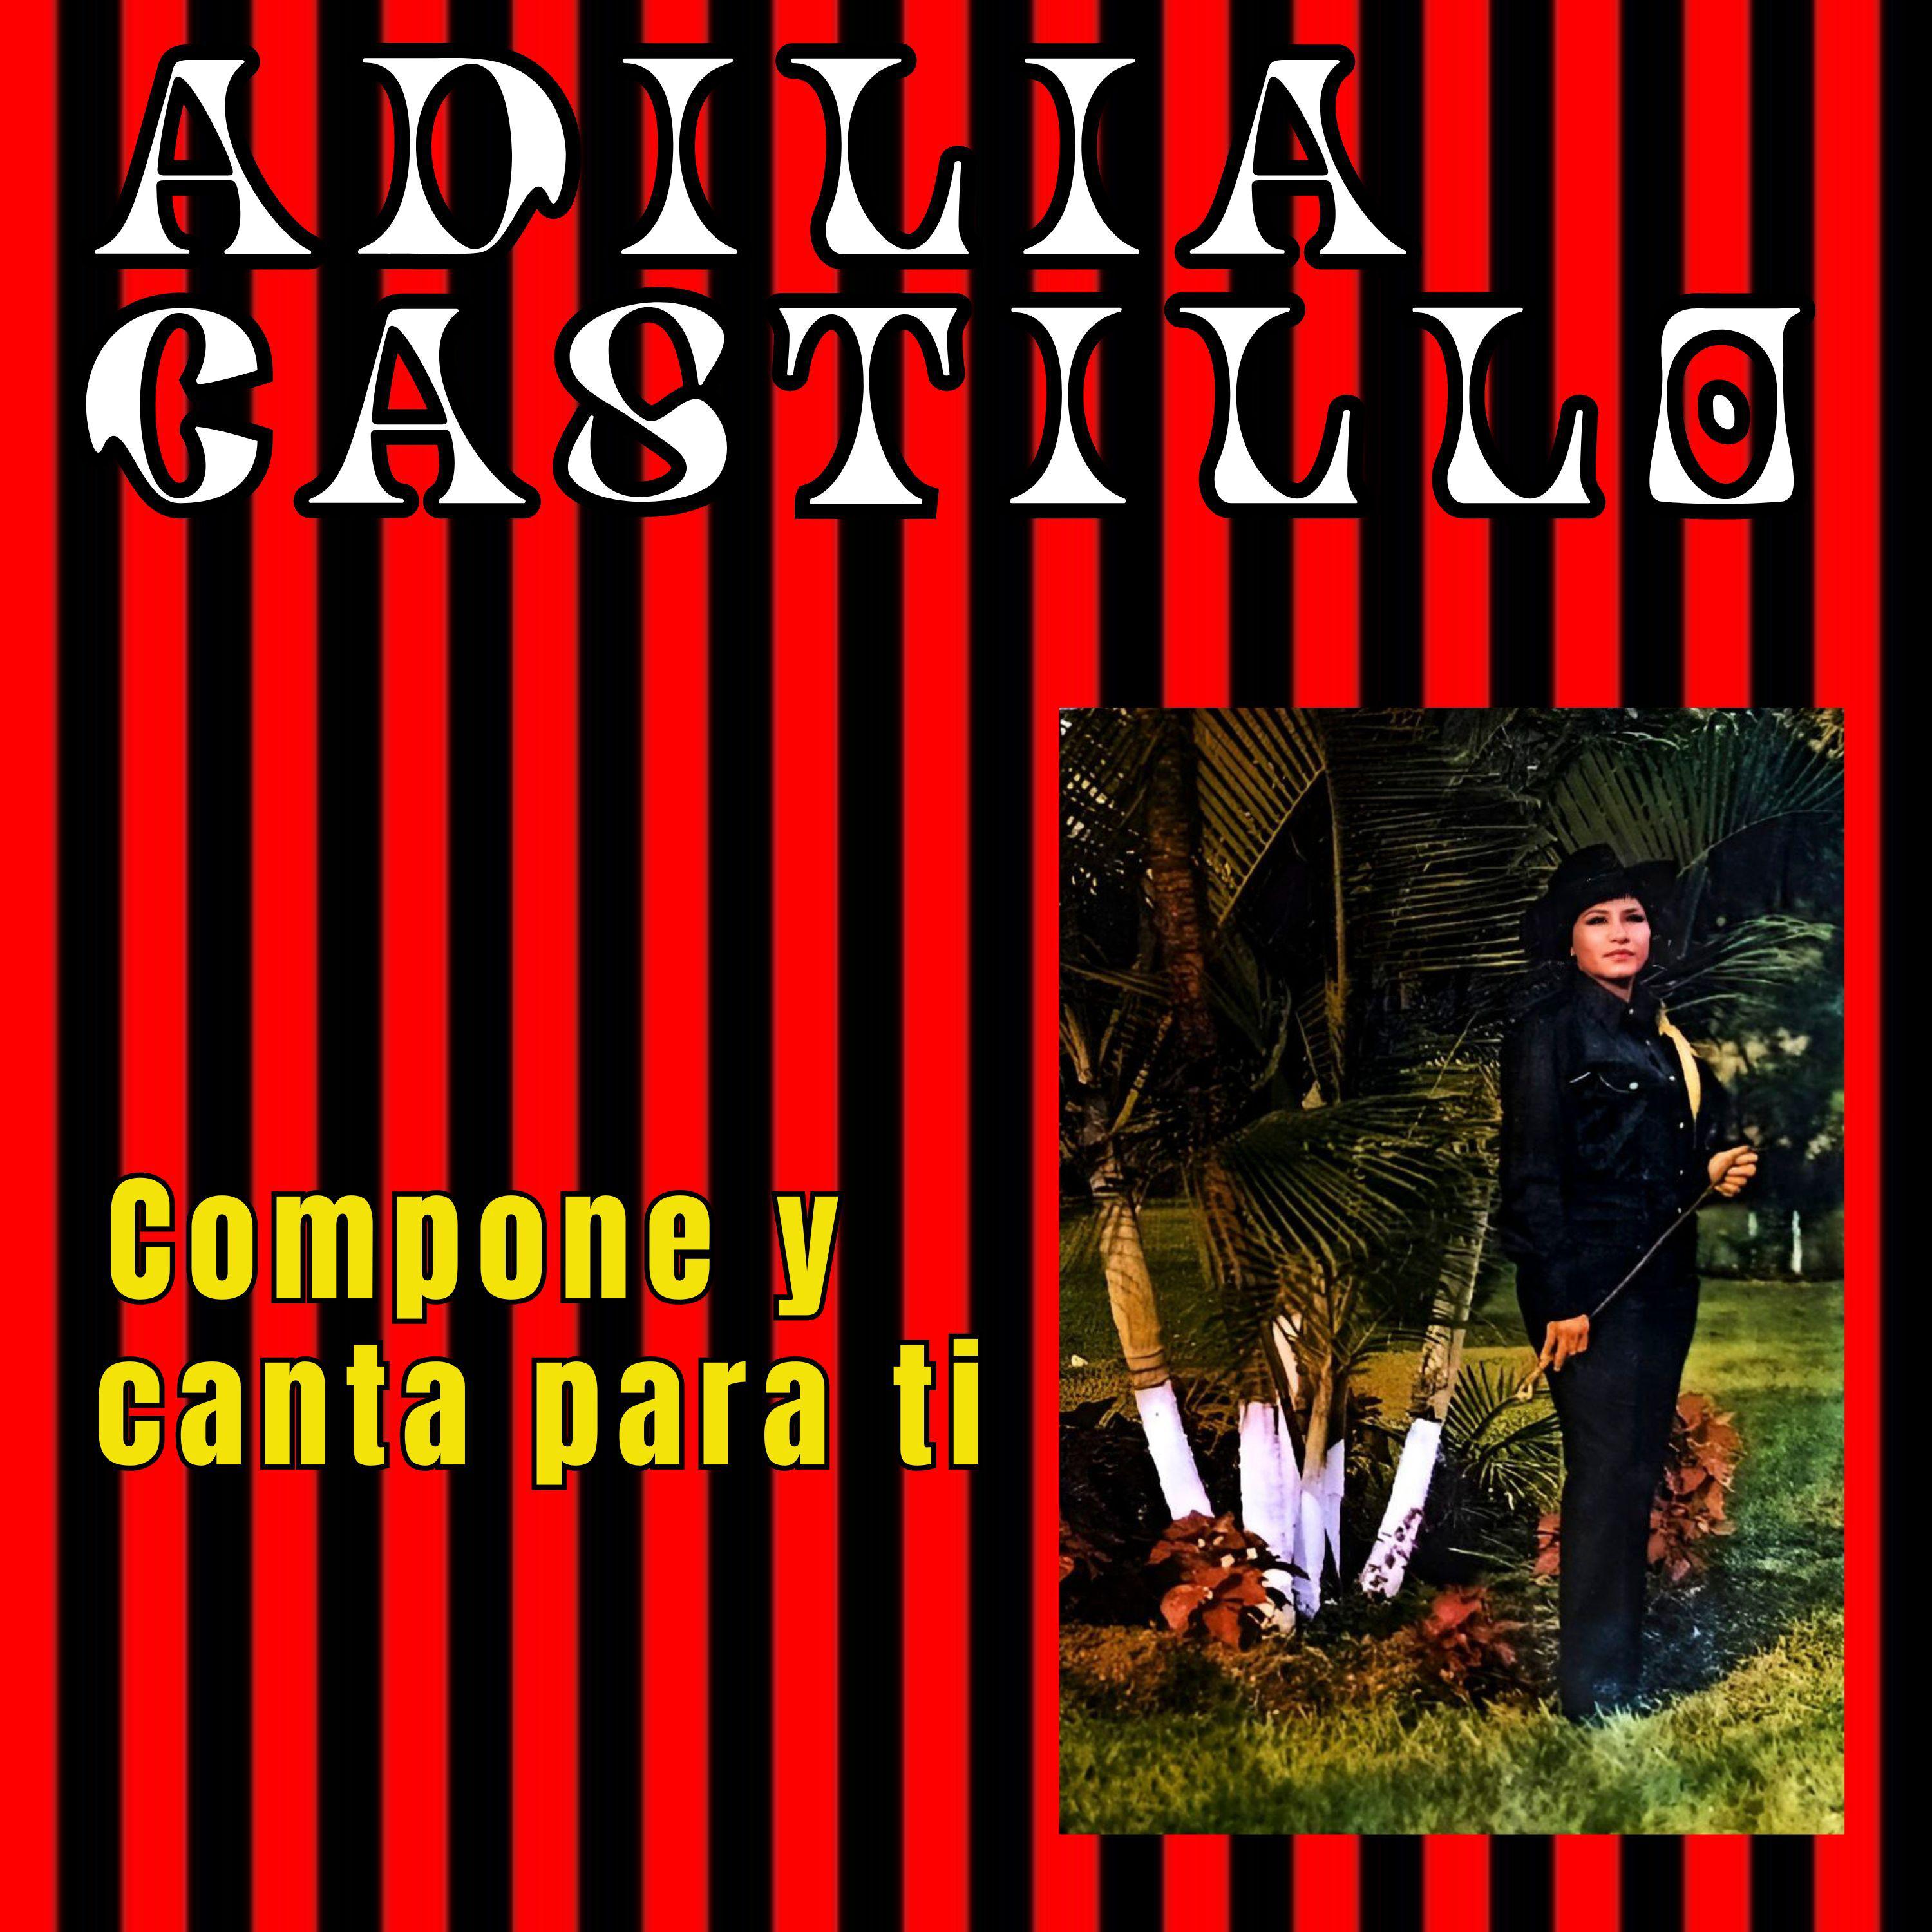 Adilia Castillo - Morena Linda